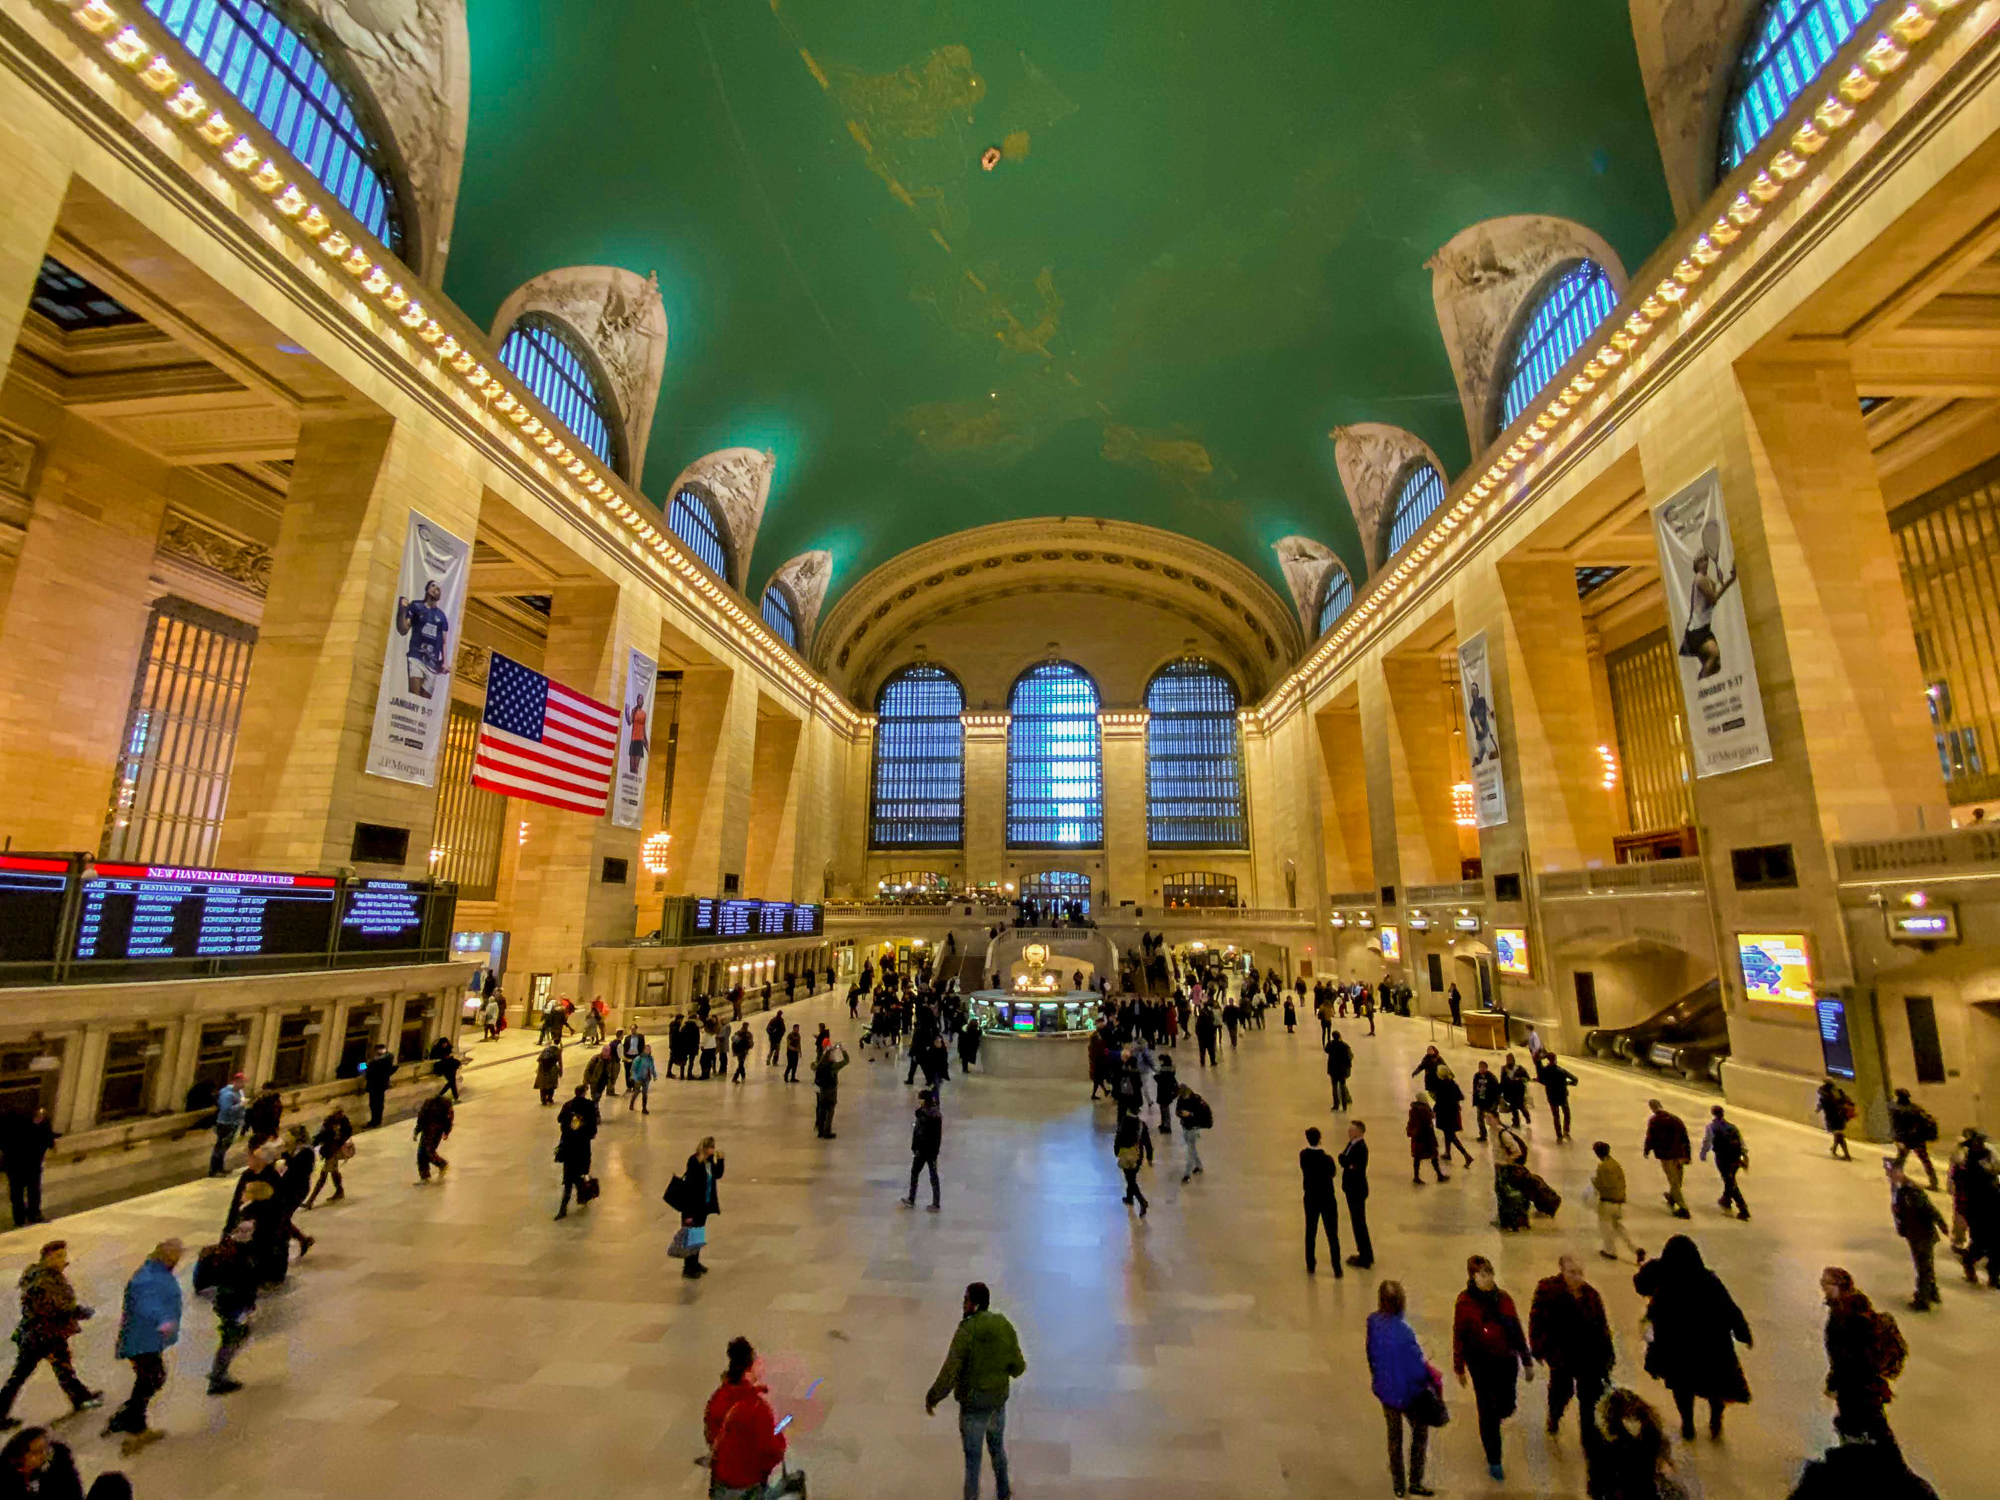 Foto do interior da estação Grand Central, em Nova York, com a cúpula alta pintada de verde e visitantes circulando